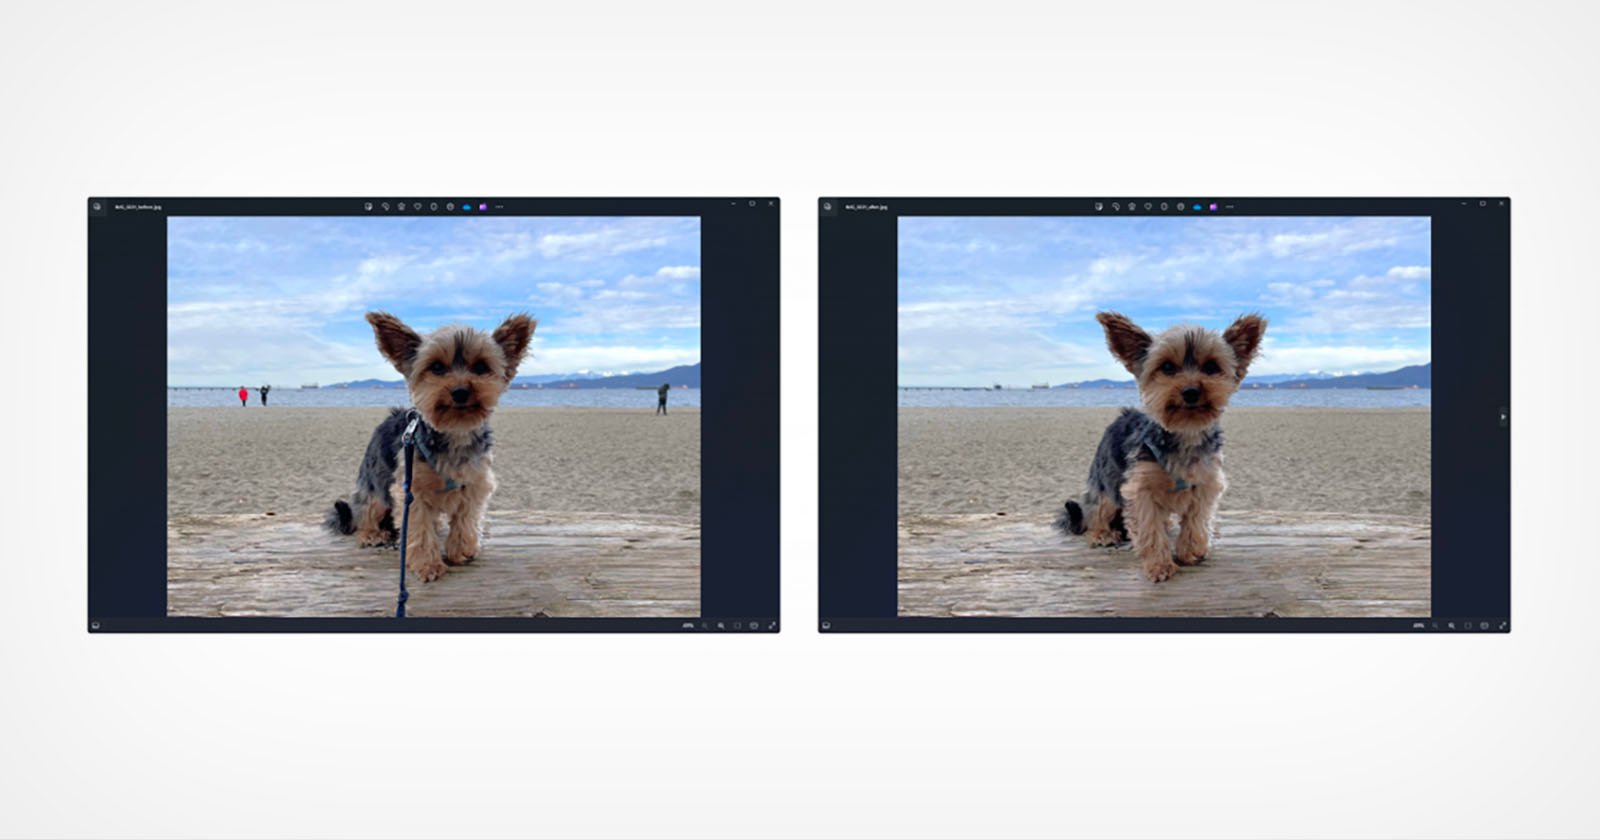  windows photos now has generative erase more 